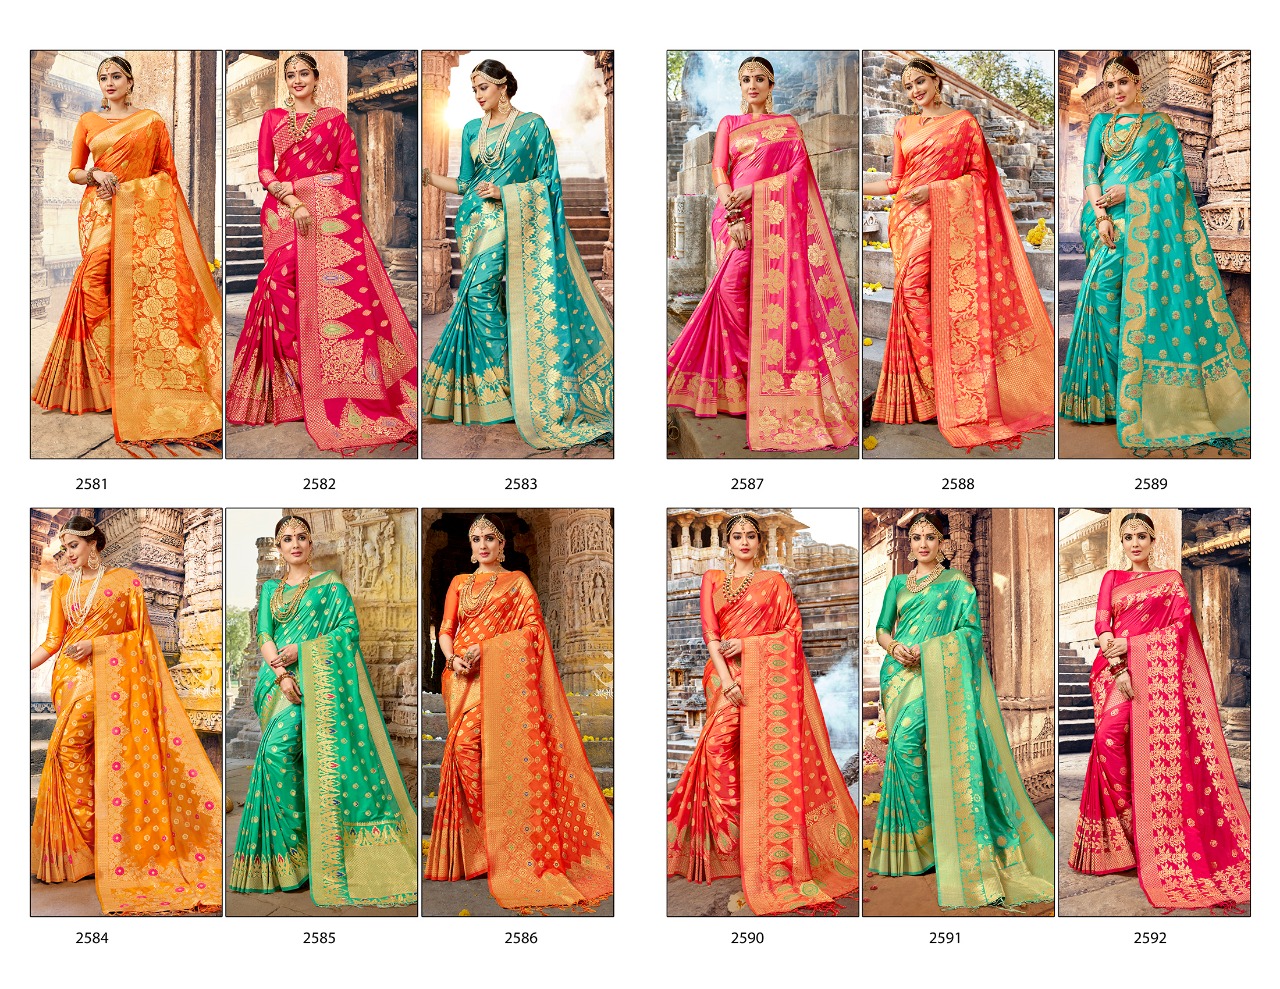 Shangrila nalli silk  sarees Collection Wholesaler